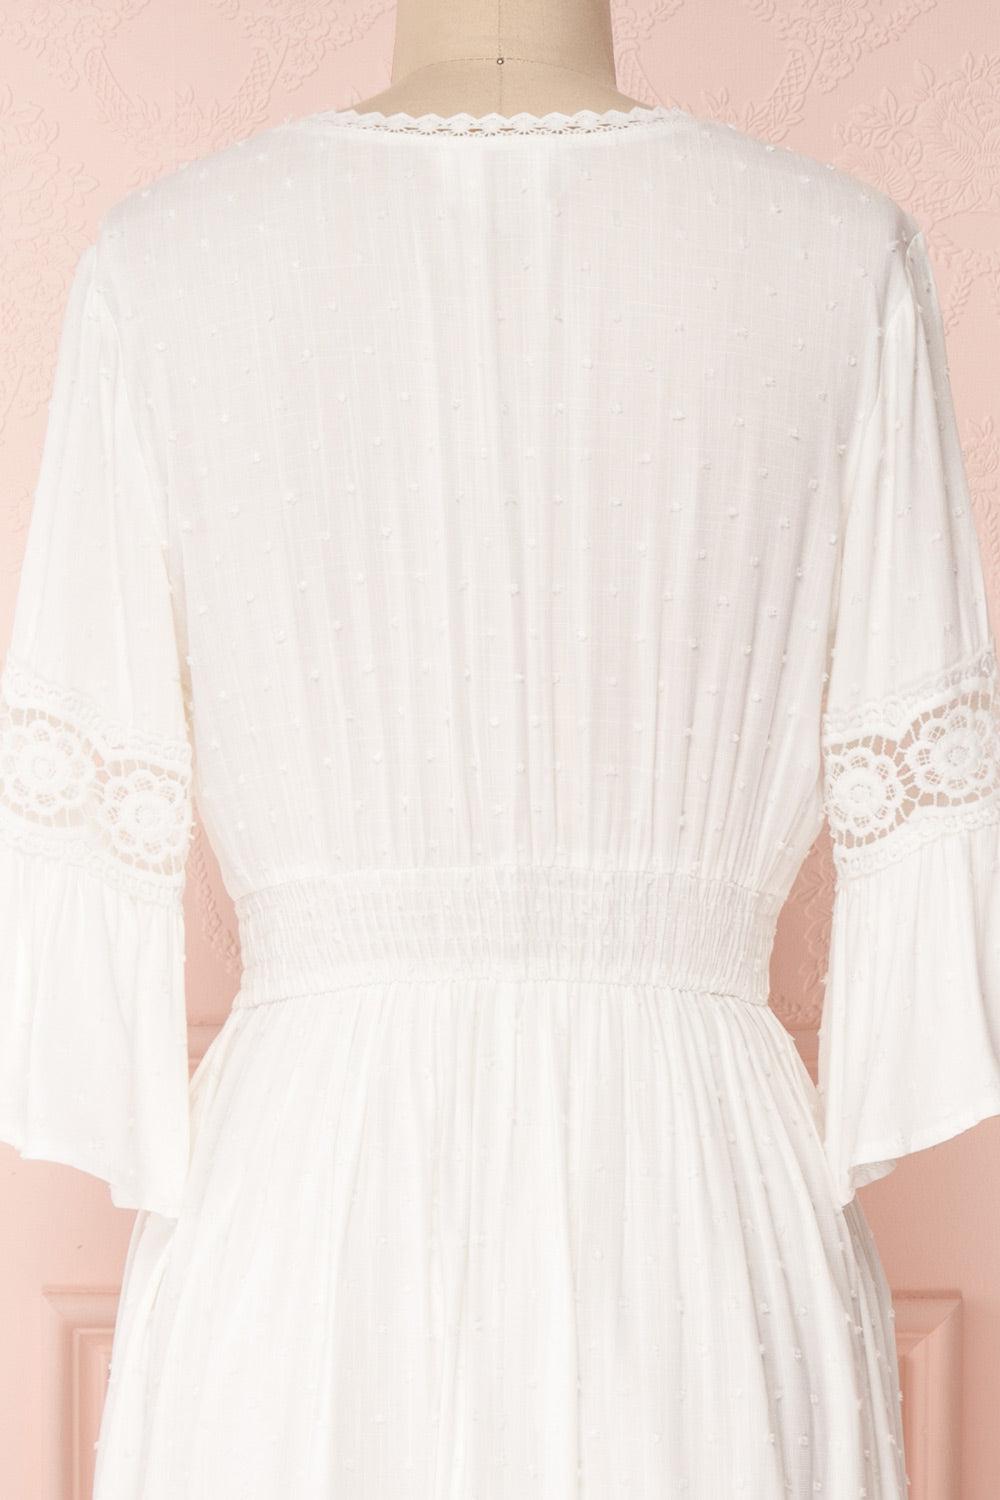 Shirio White A-Line Midi Dress with Lace | Boutique 1861